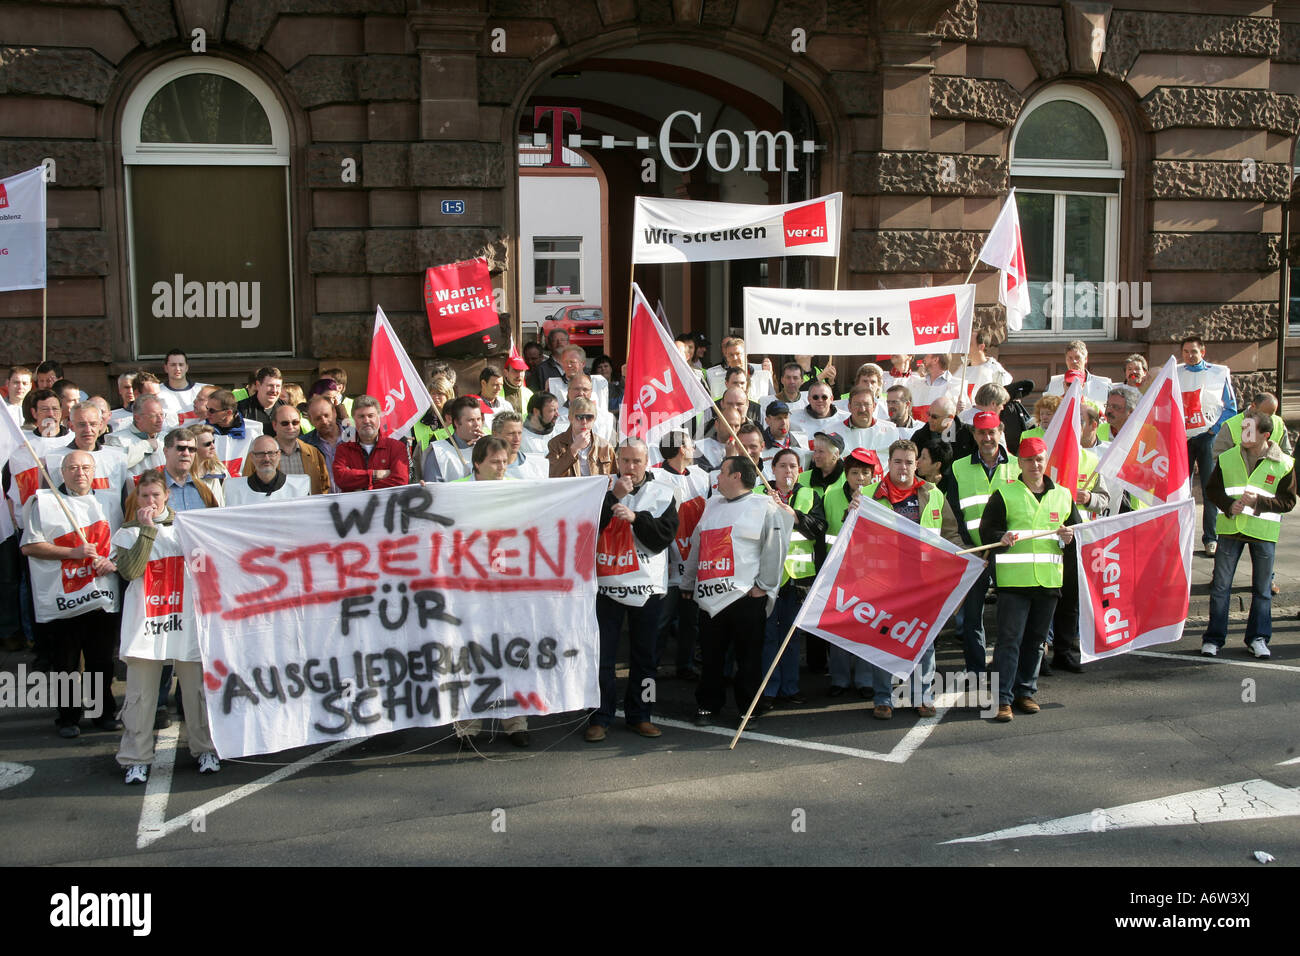 Les travailleurs syndiqués de Telekom dans une grève d'avertissement, Koblenz, Rhénanie-Palatinat, Allemagne Banque D'Images